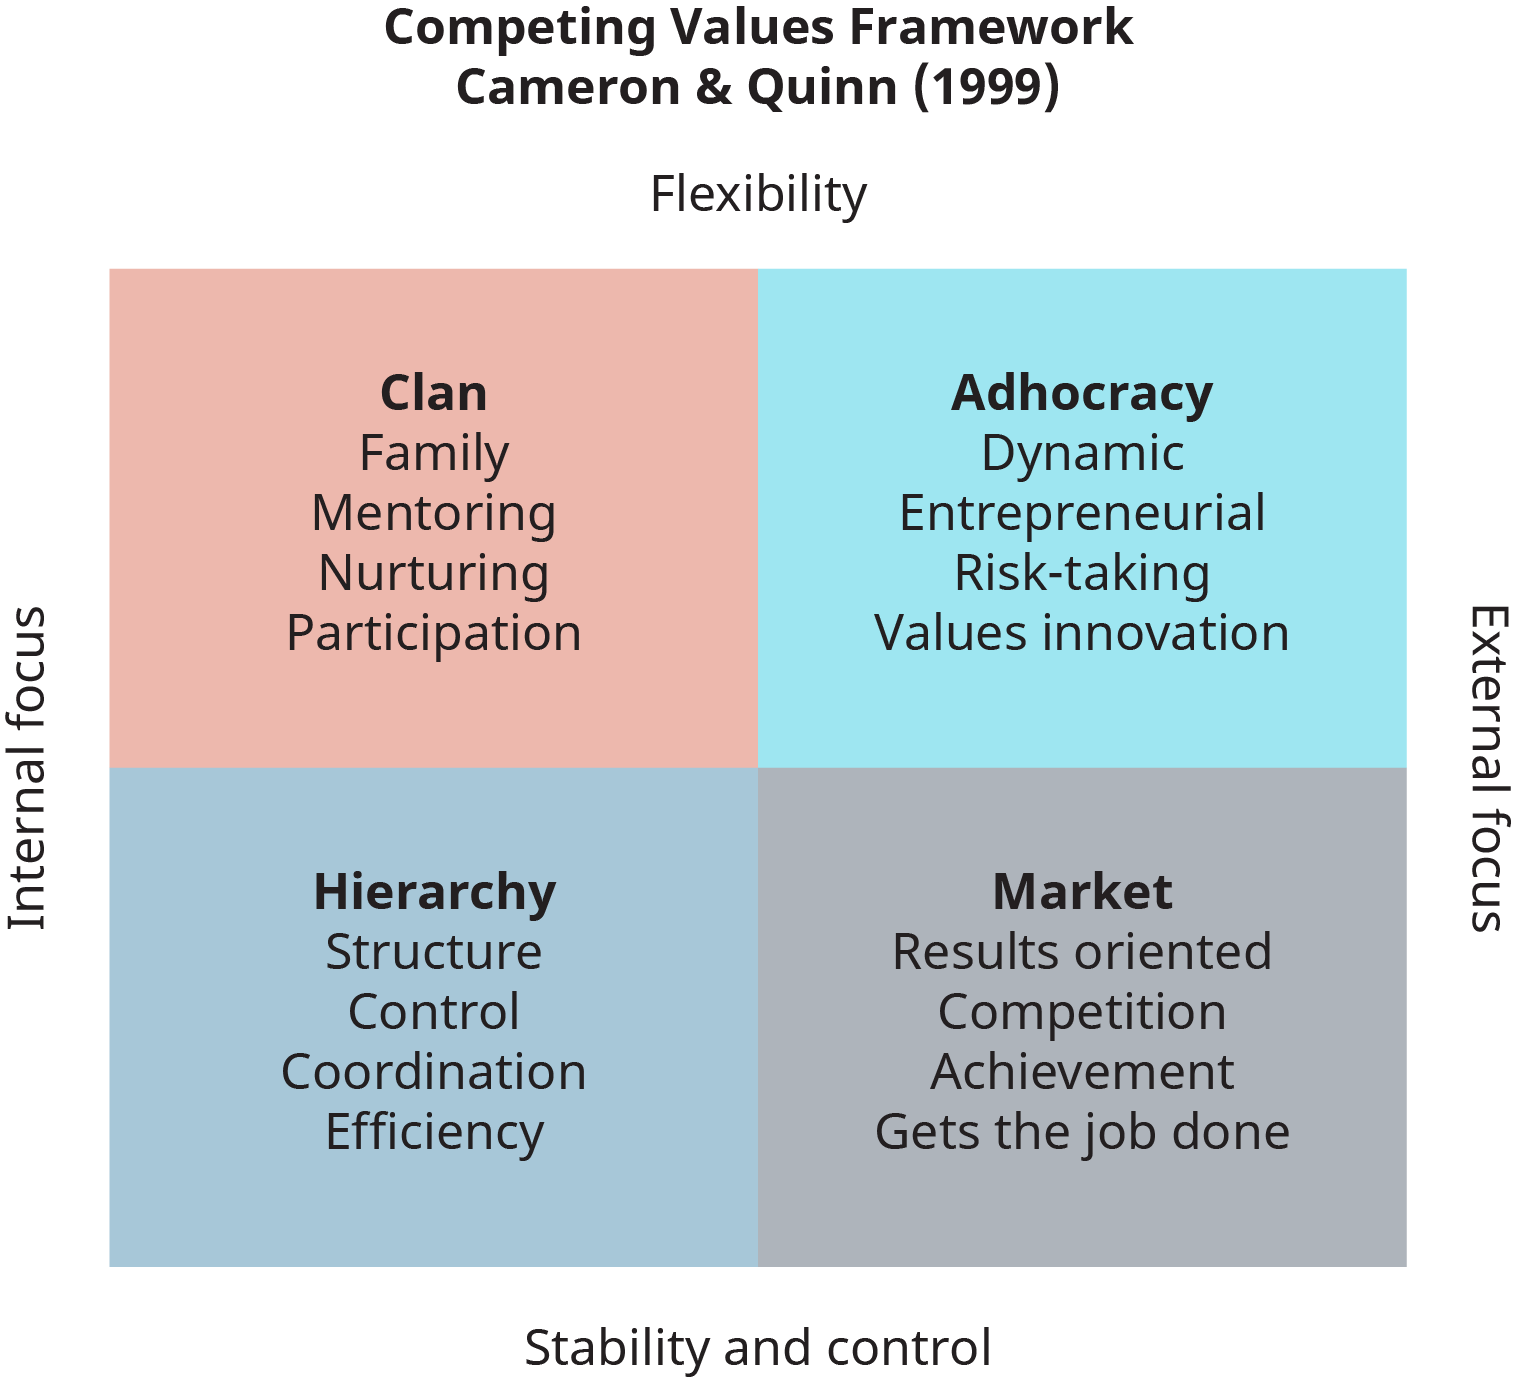 Un diagramme montre le cadre de valeurs concurrentes pour l'évaluation culturelle des organisations, tel que présenté par Cameron et Quinn en 1999.